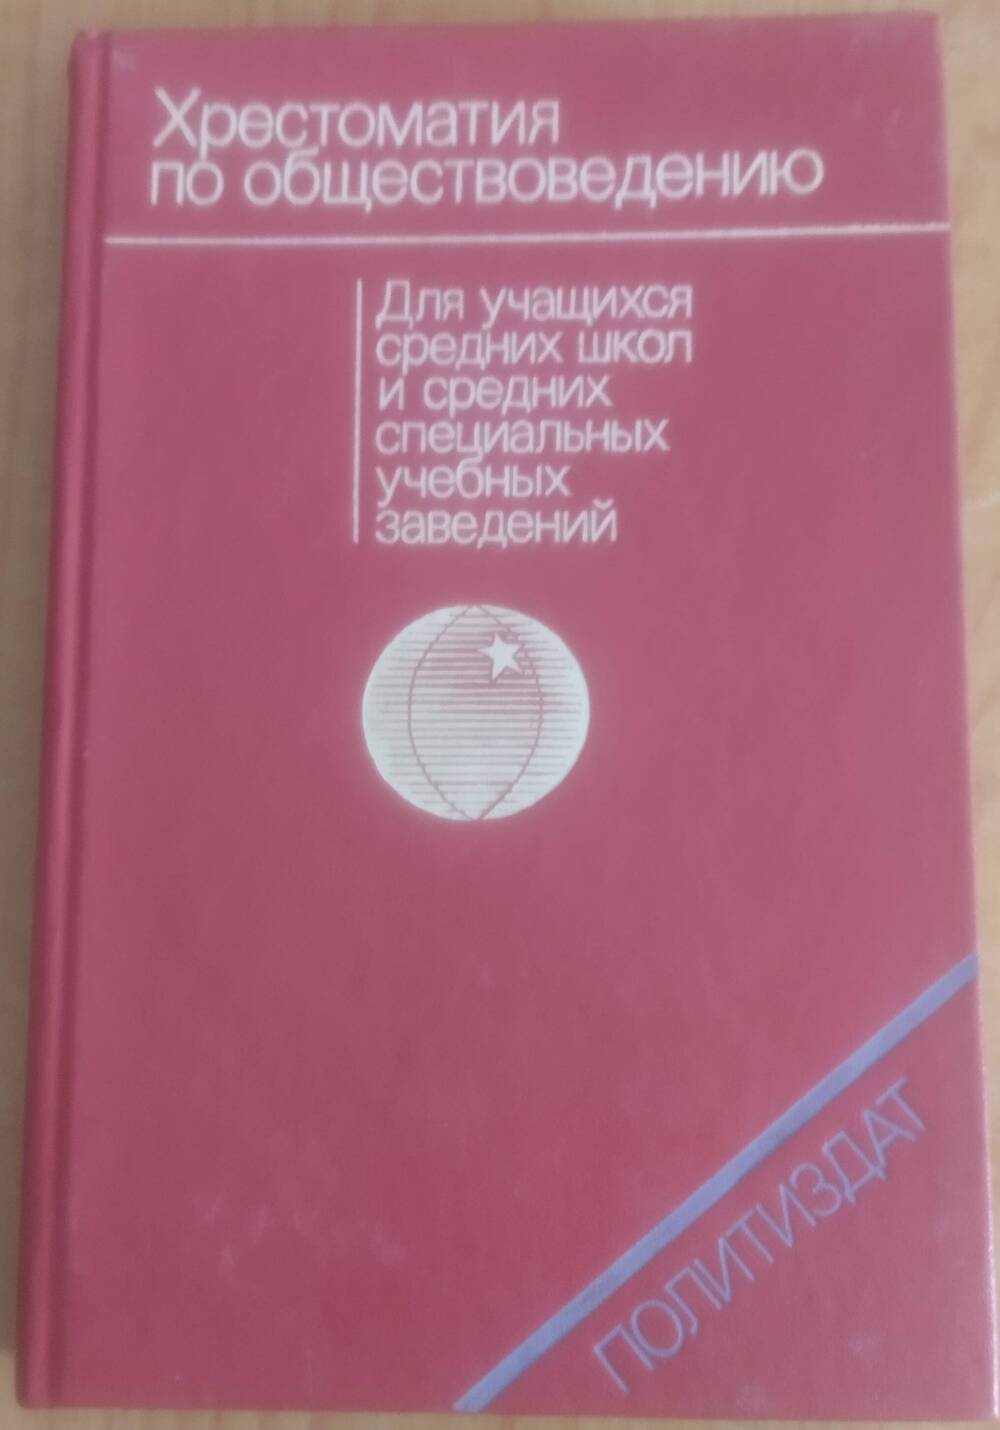 Книга. Хрестоматия по обществоведению,432 стр.